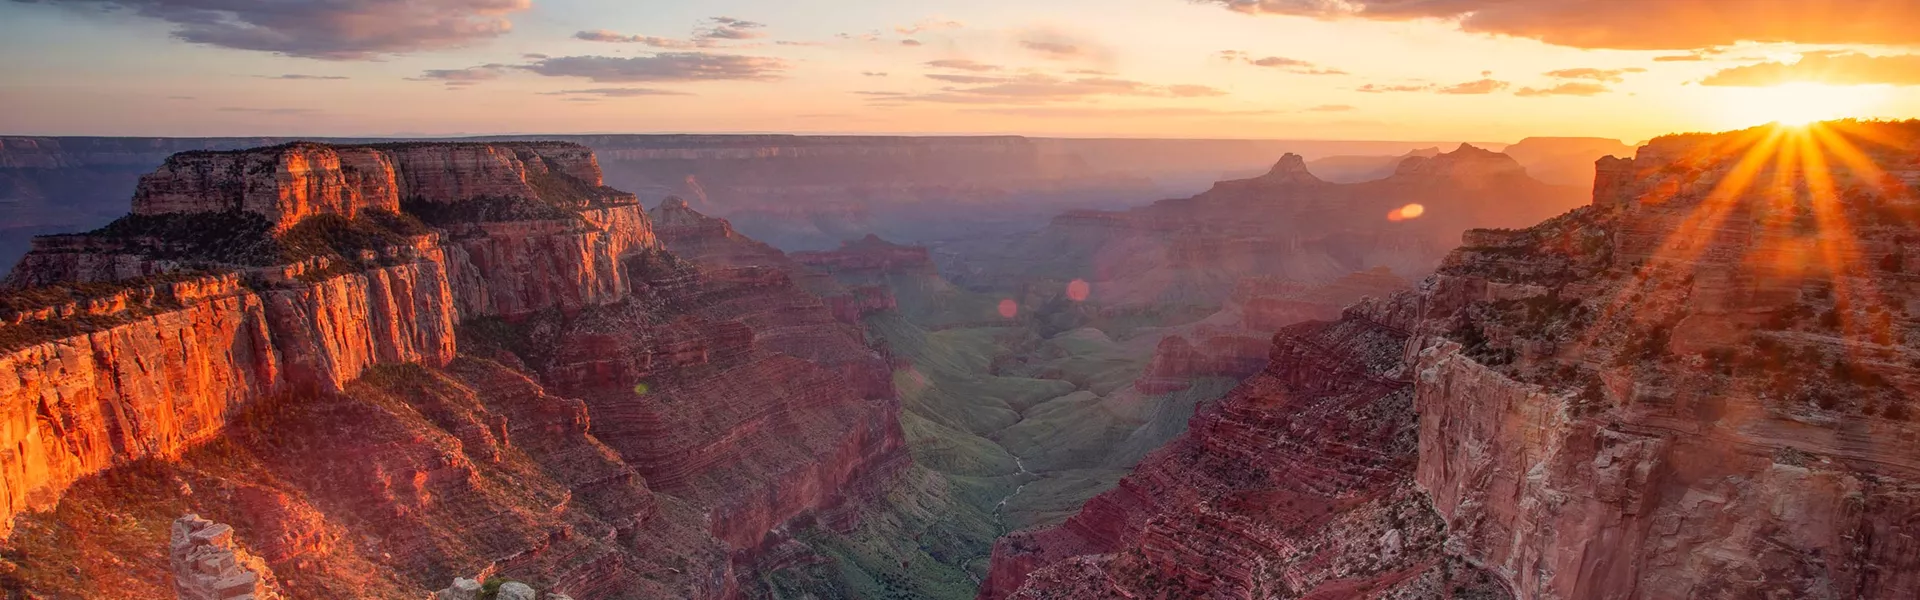 Grand Canyon by sunset, USA